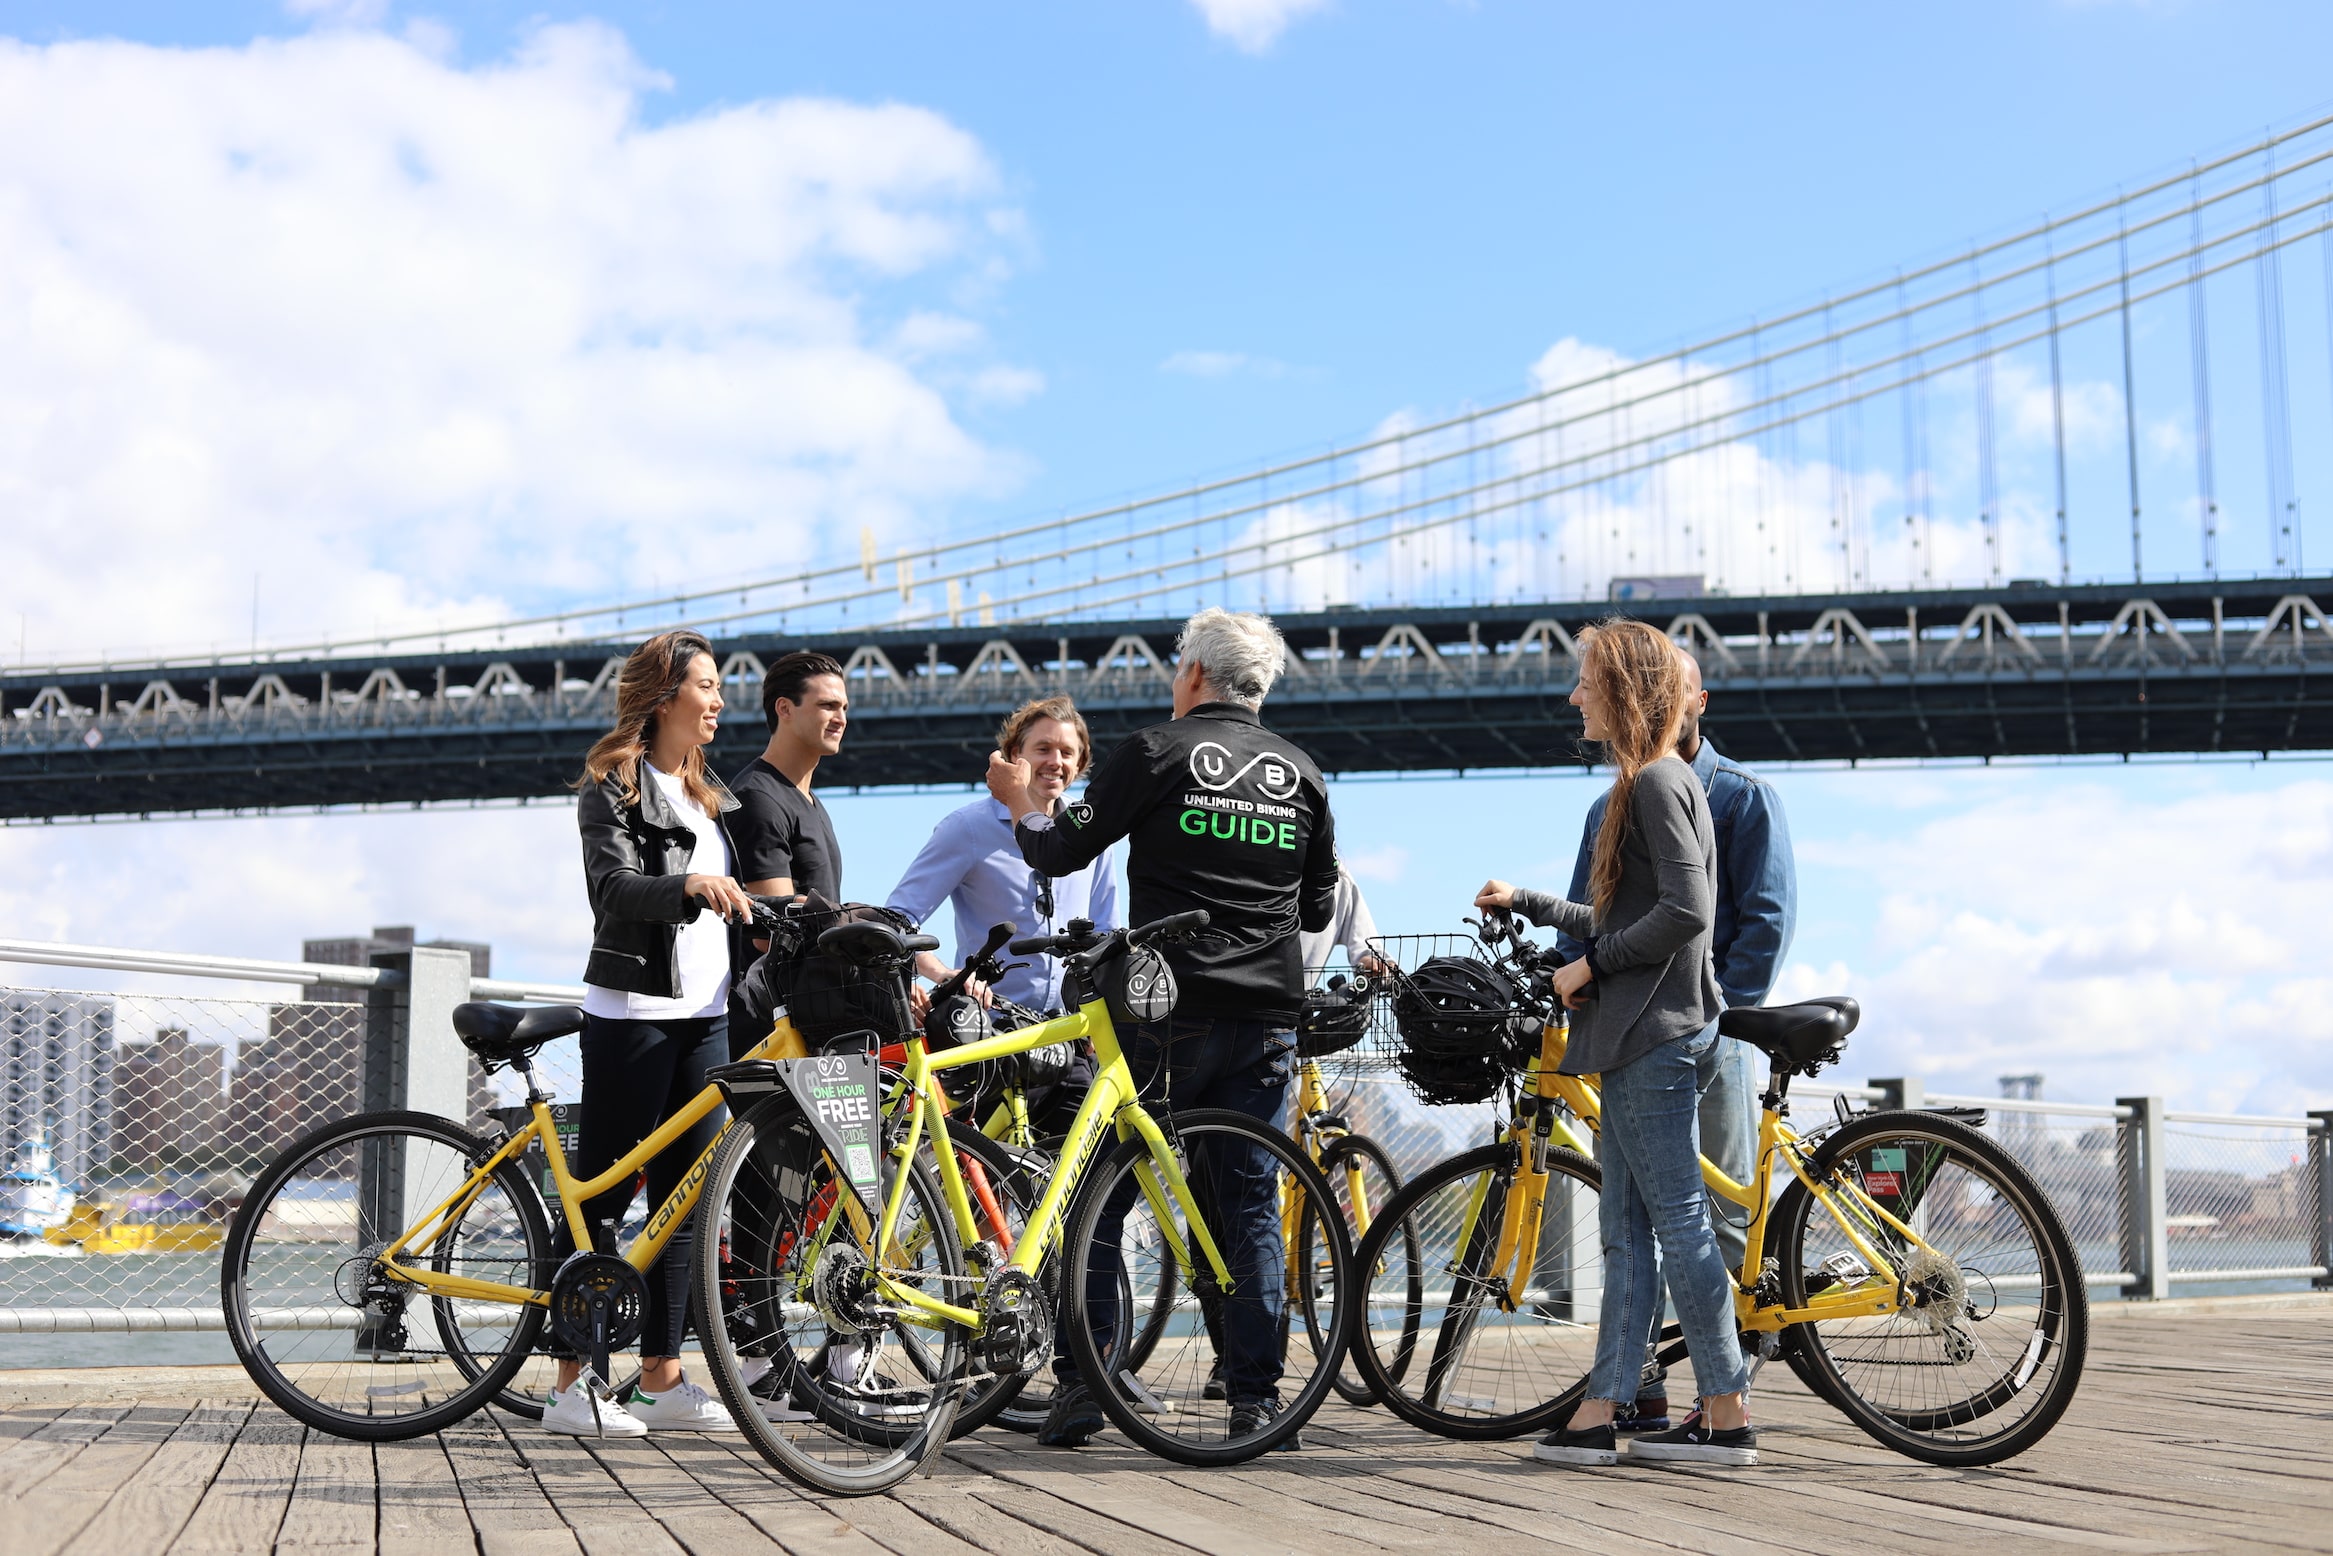 brooklyn bike tours